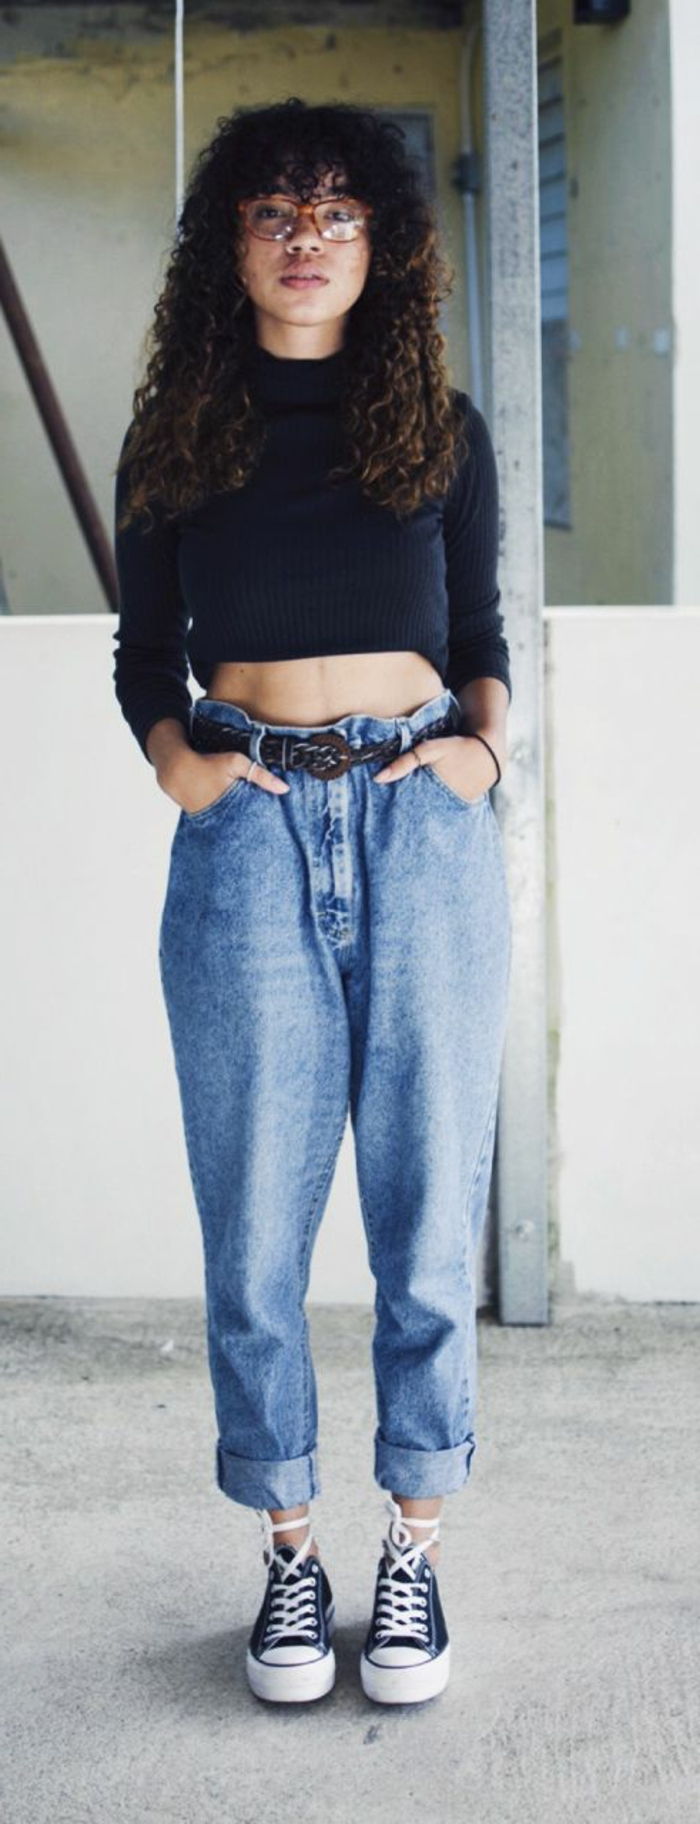 uma garota de roupa dos anos 80 - suéter preto curto, jeans de cintura alta, tênis preto, cabelo encaracolado com franja